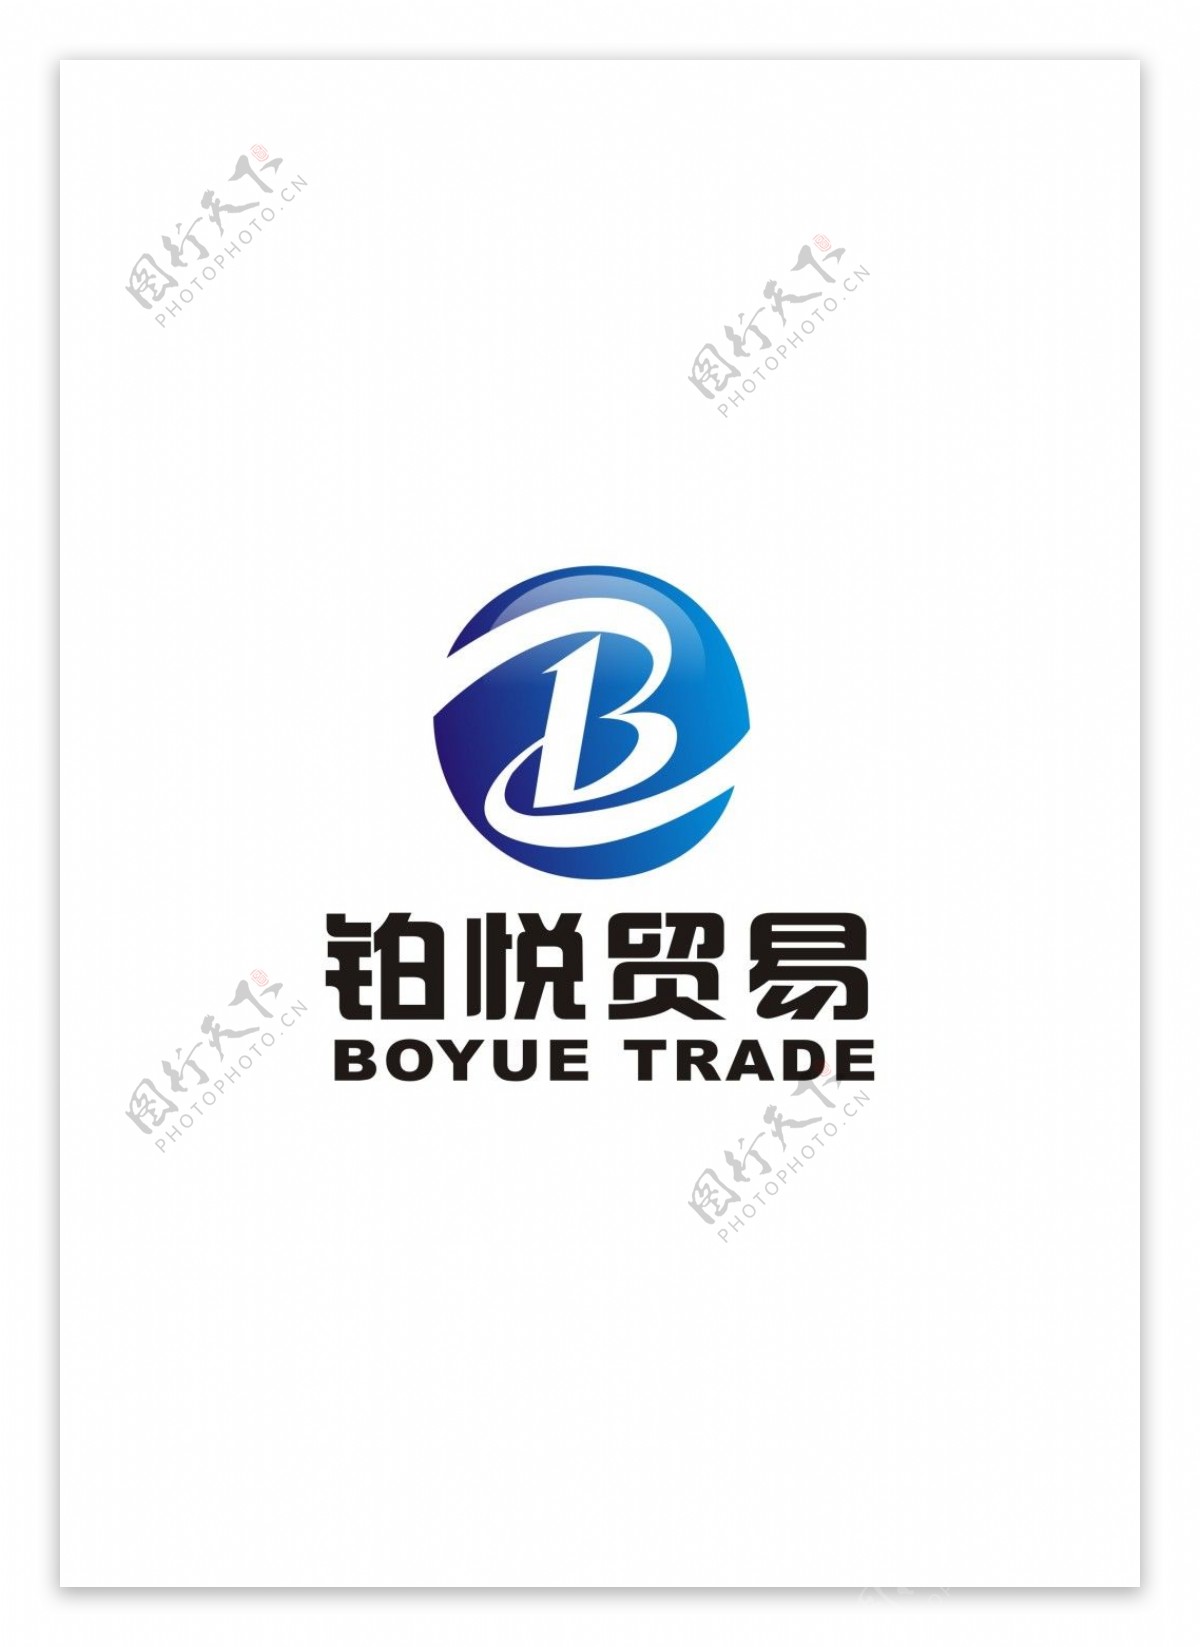 贸易公司logo设计图片